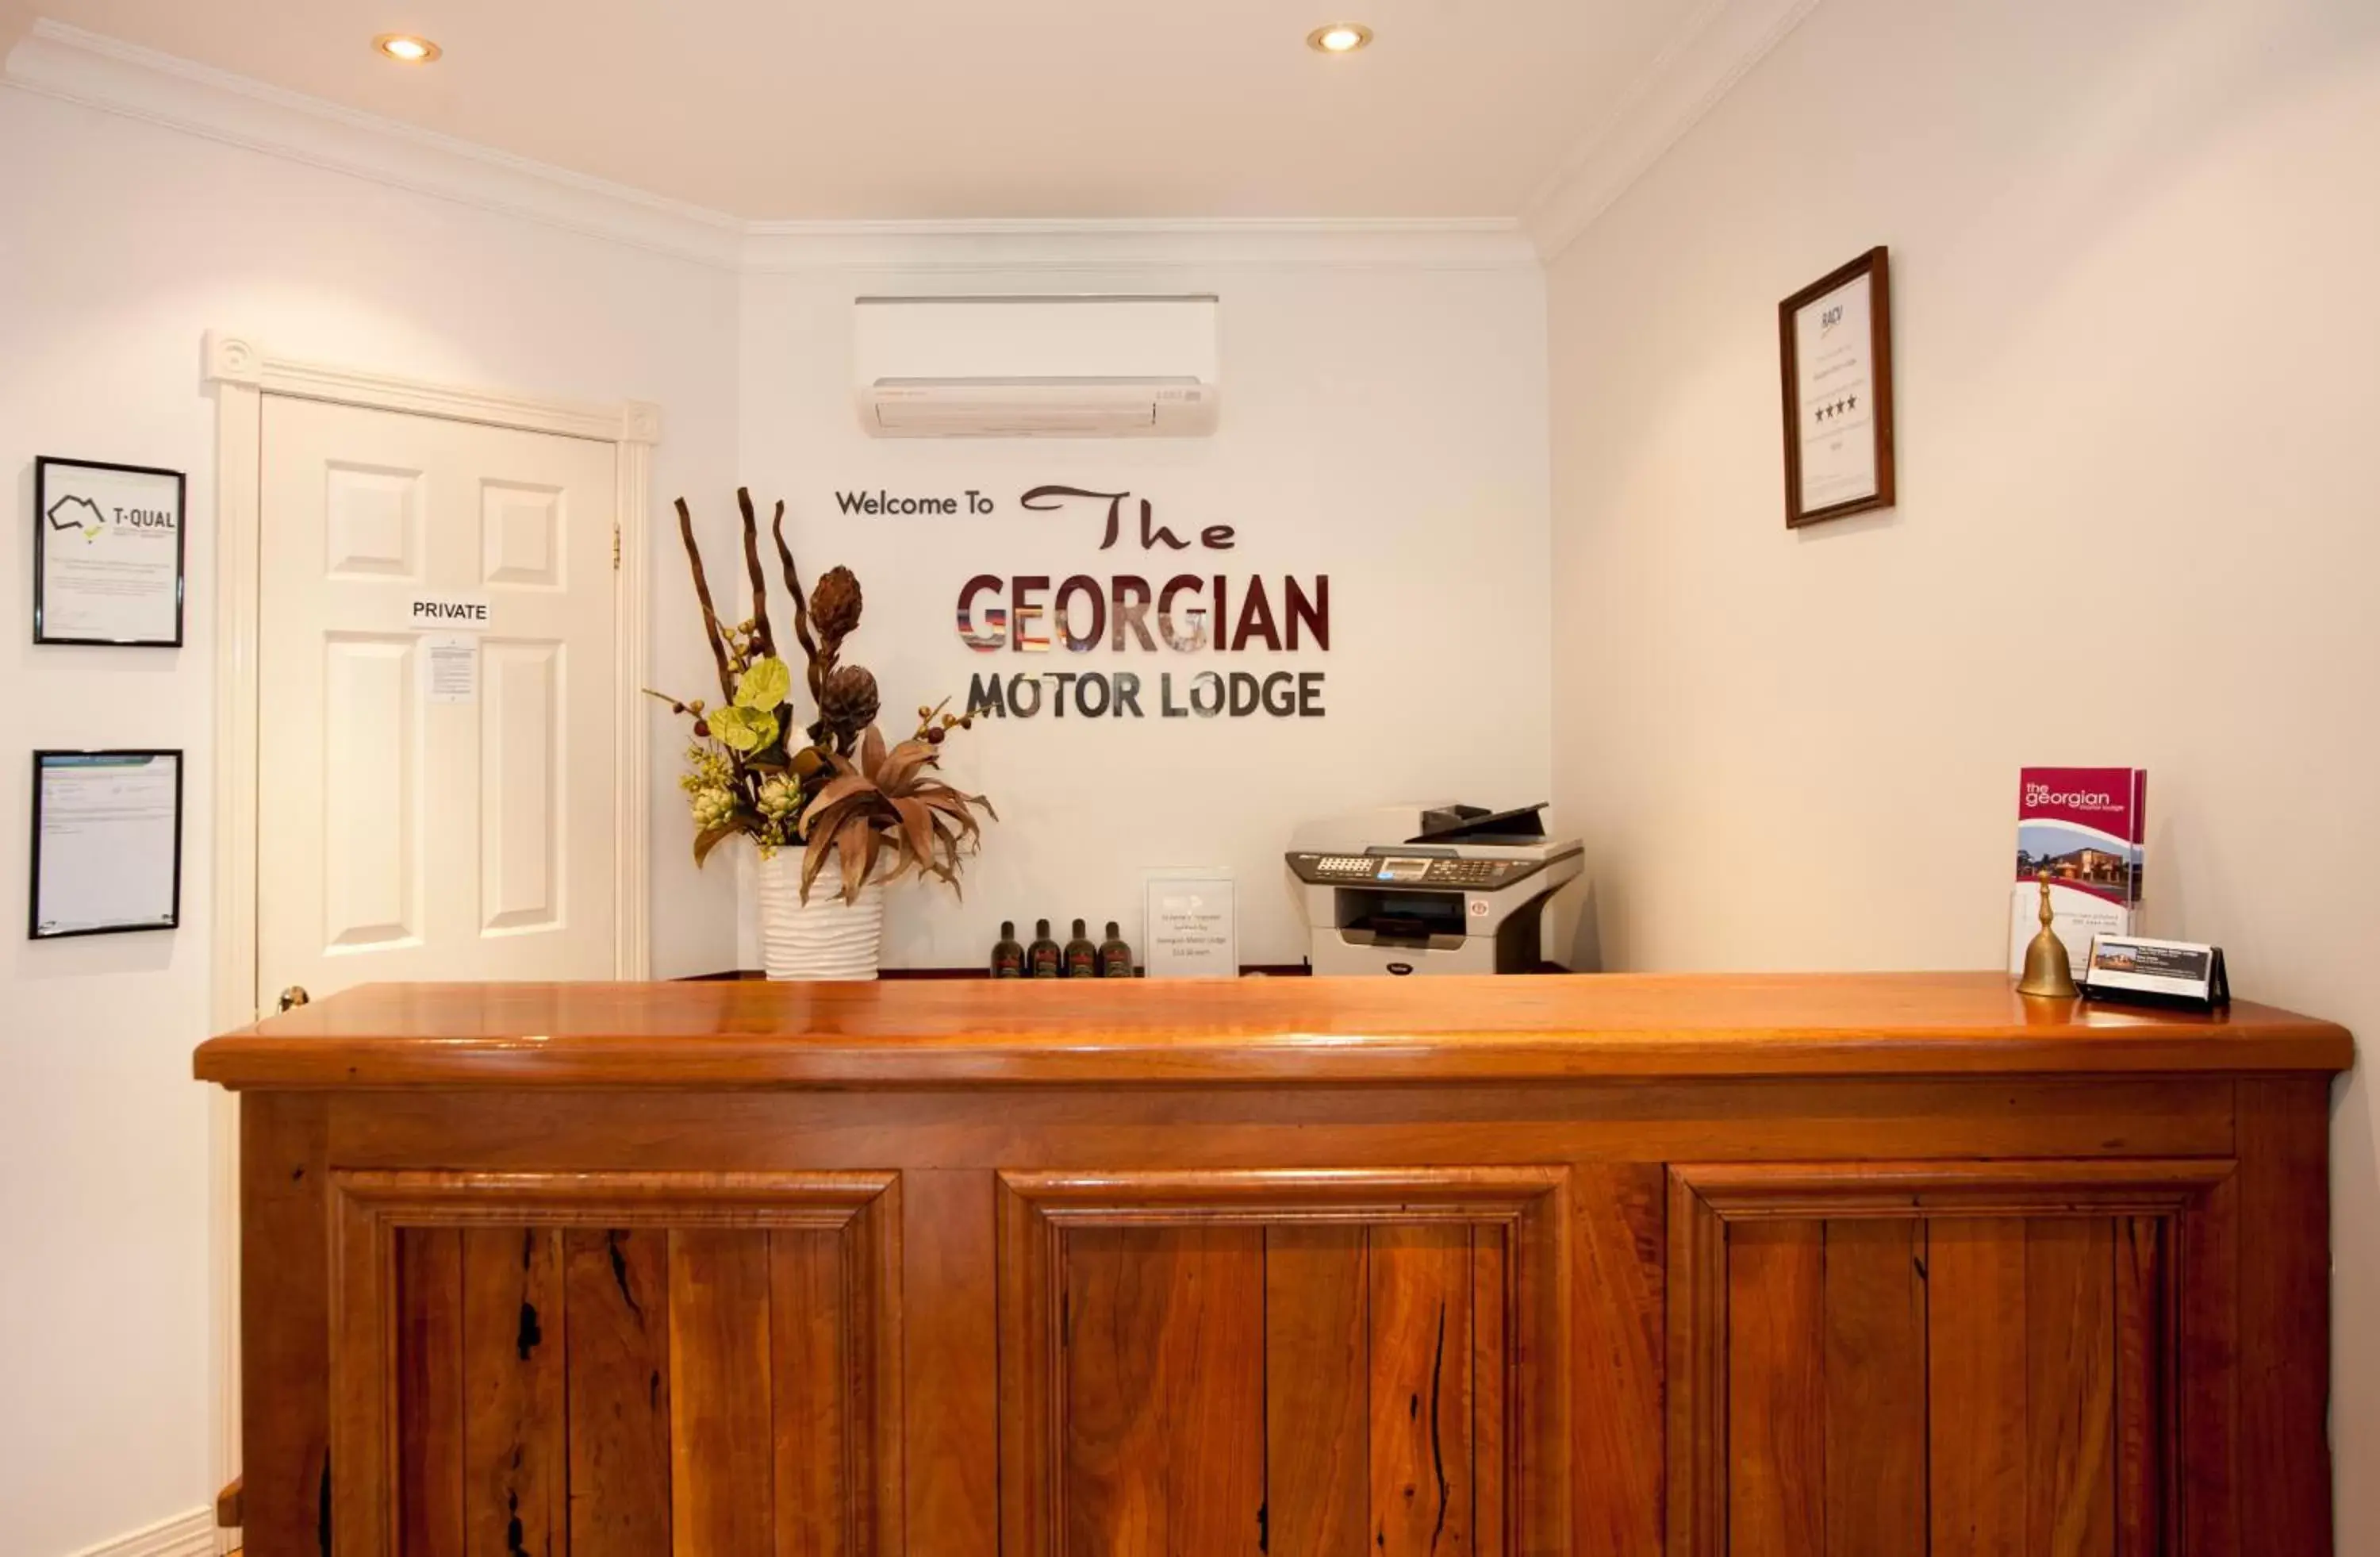 Lobby or reception, Lobby/Reception in Georgian Motor Lodge